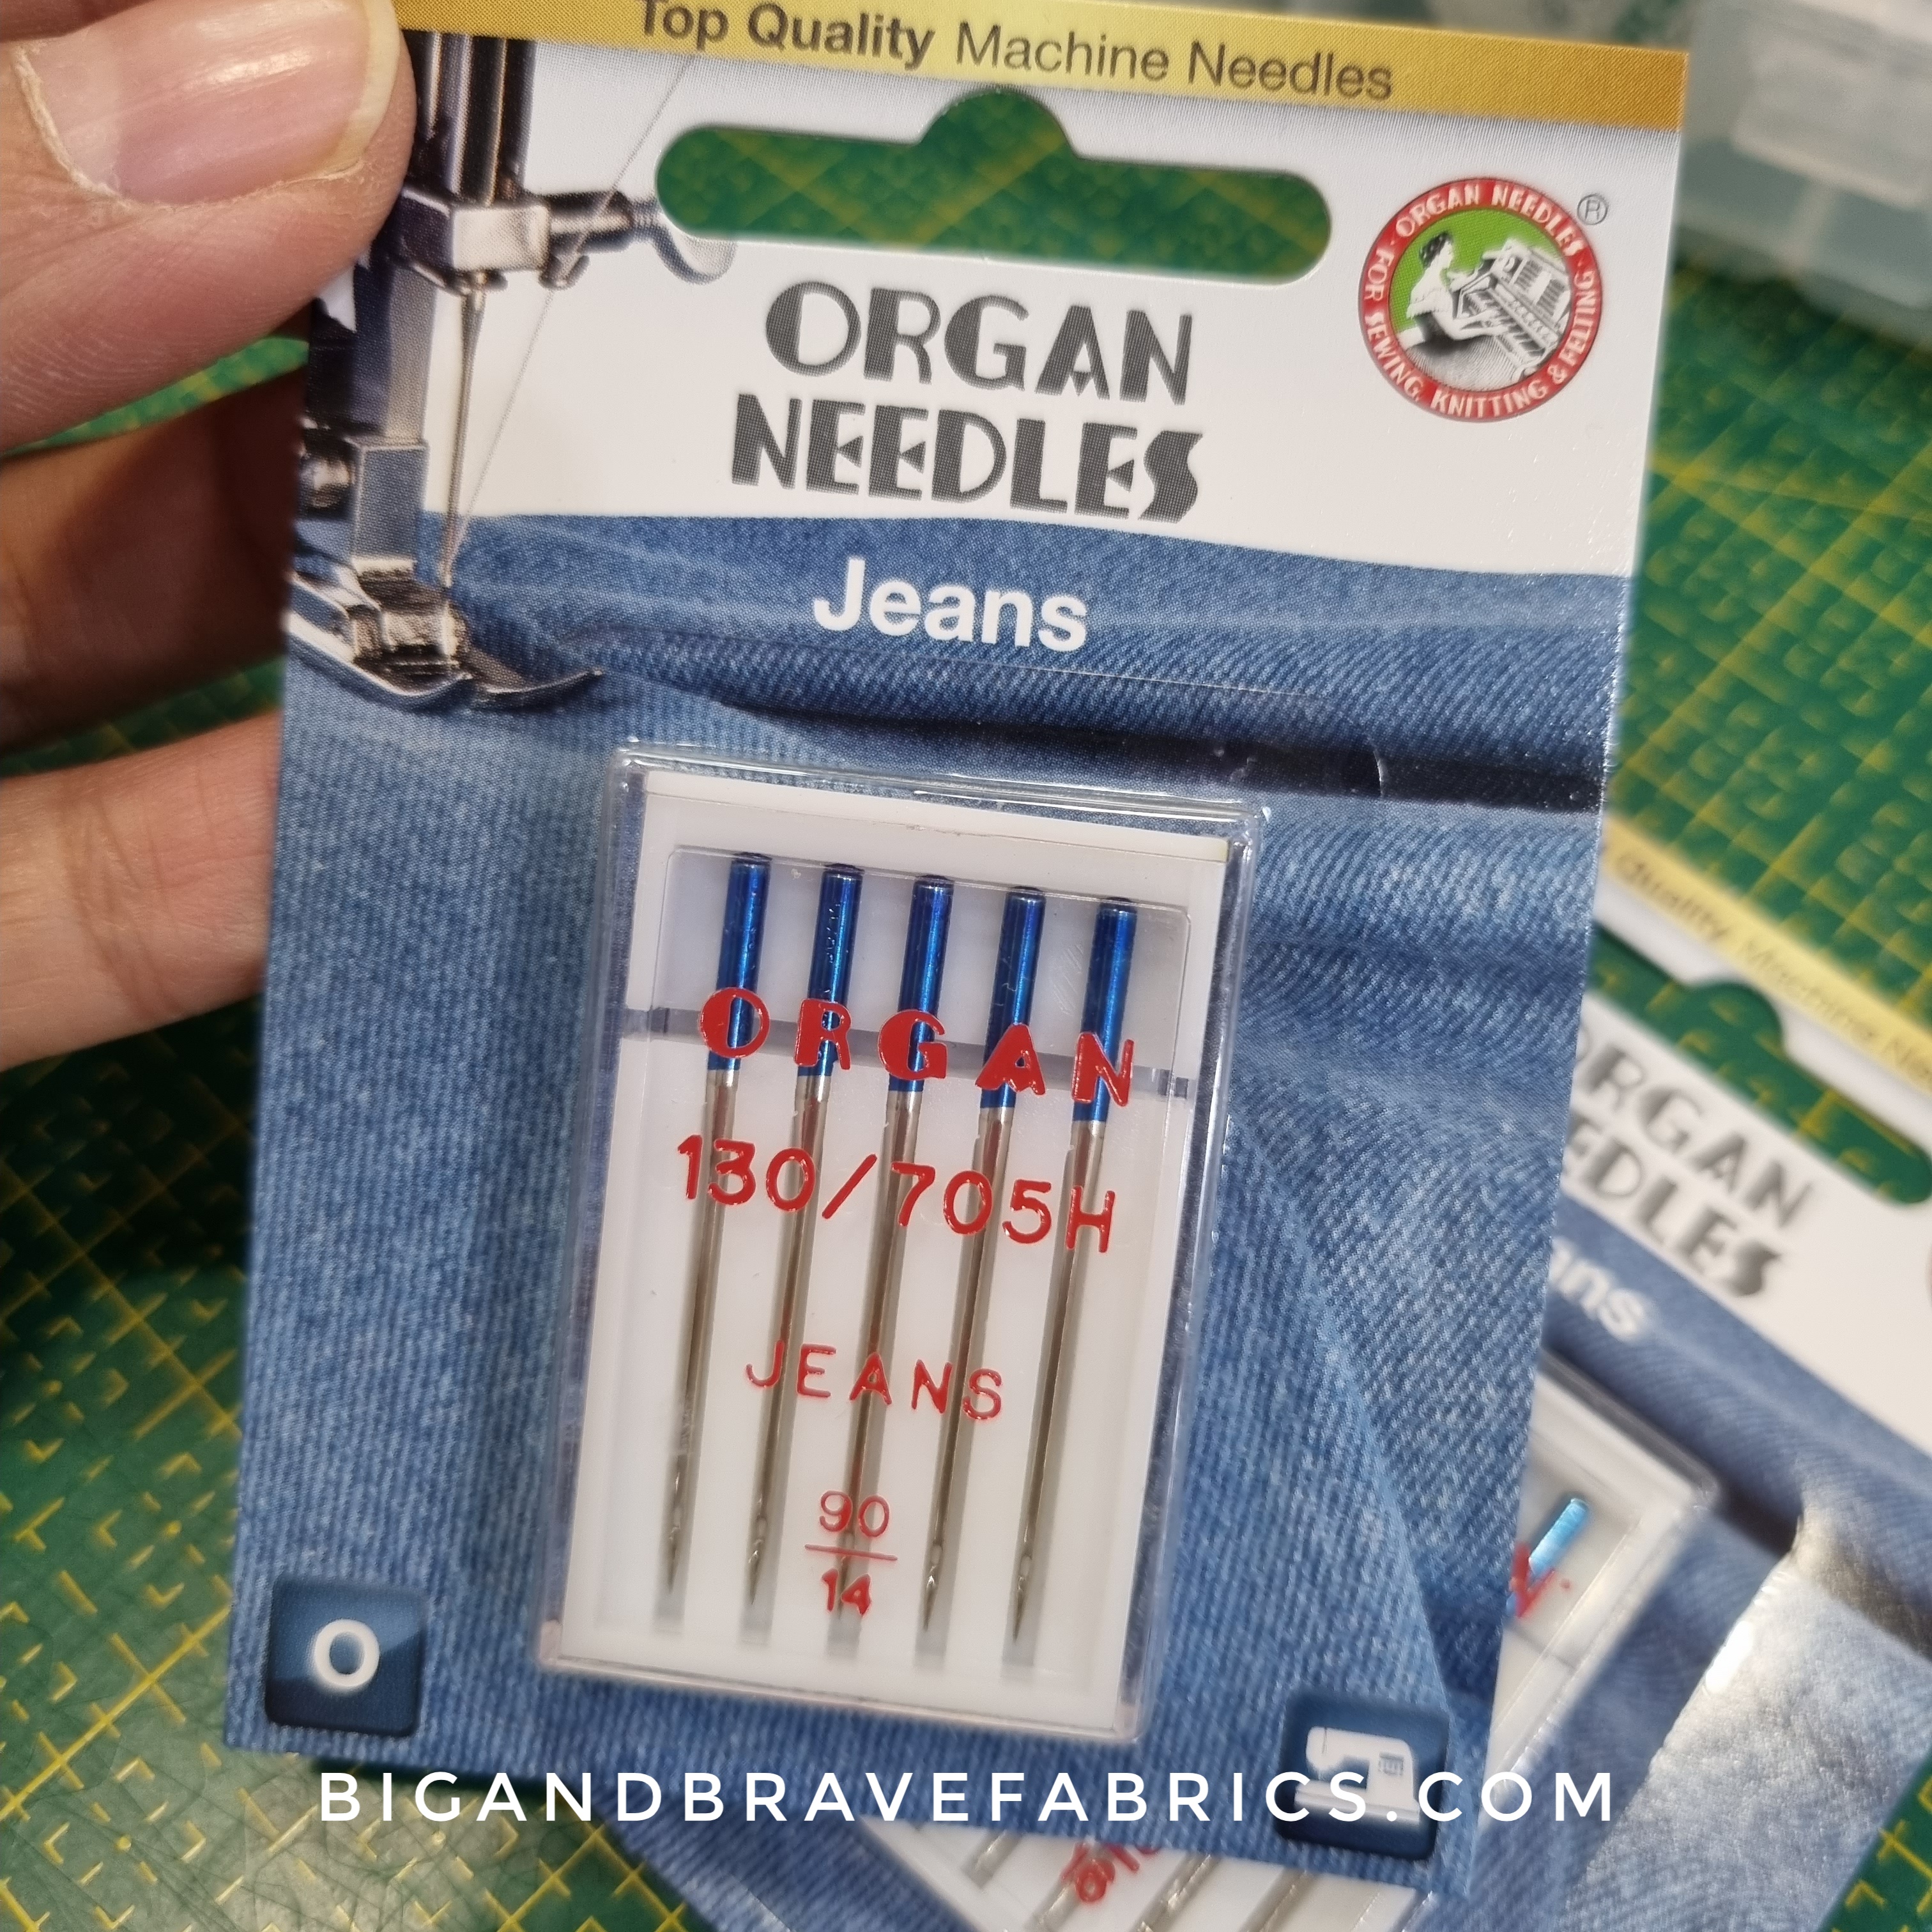 ORGAN Jeans Needles 130/705H Needles, sizes 14 & 16